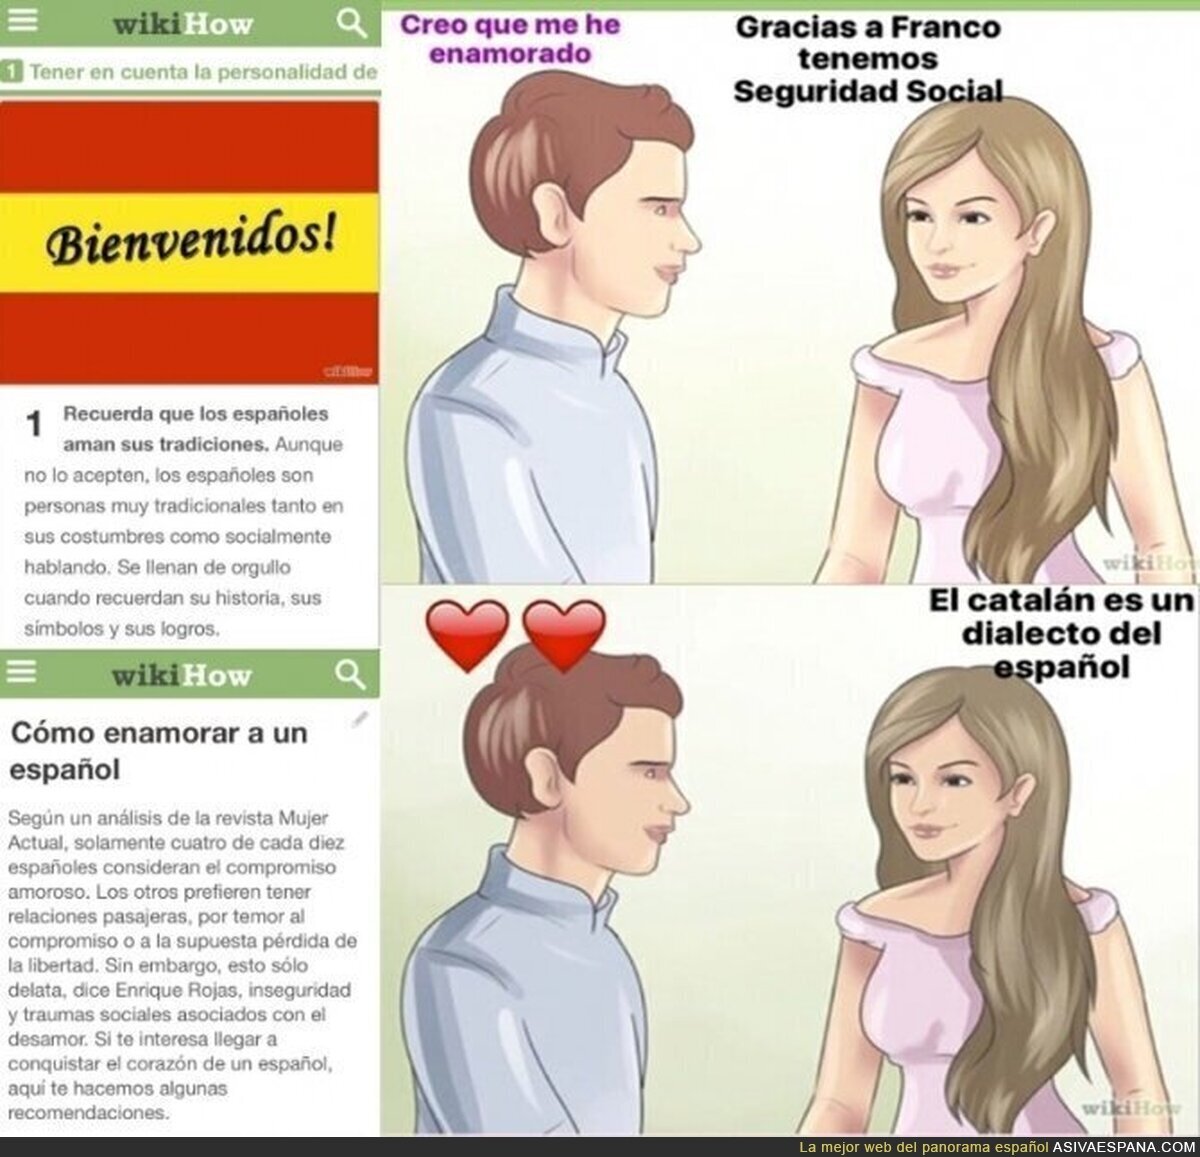 La demencial manera cómo wikiHow te recomienda ligar con un español